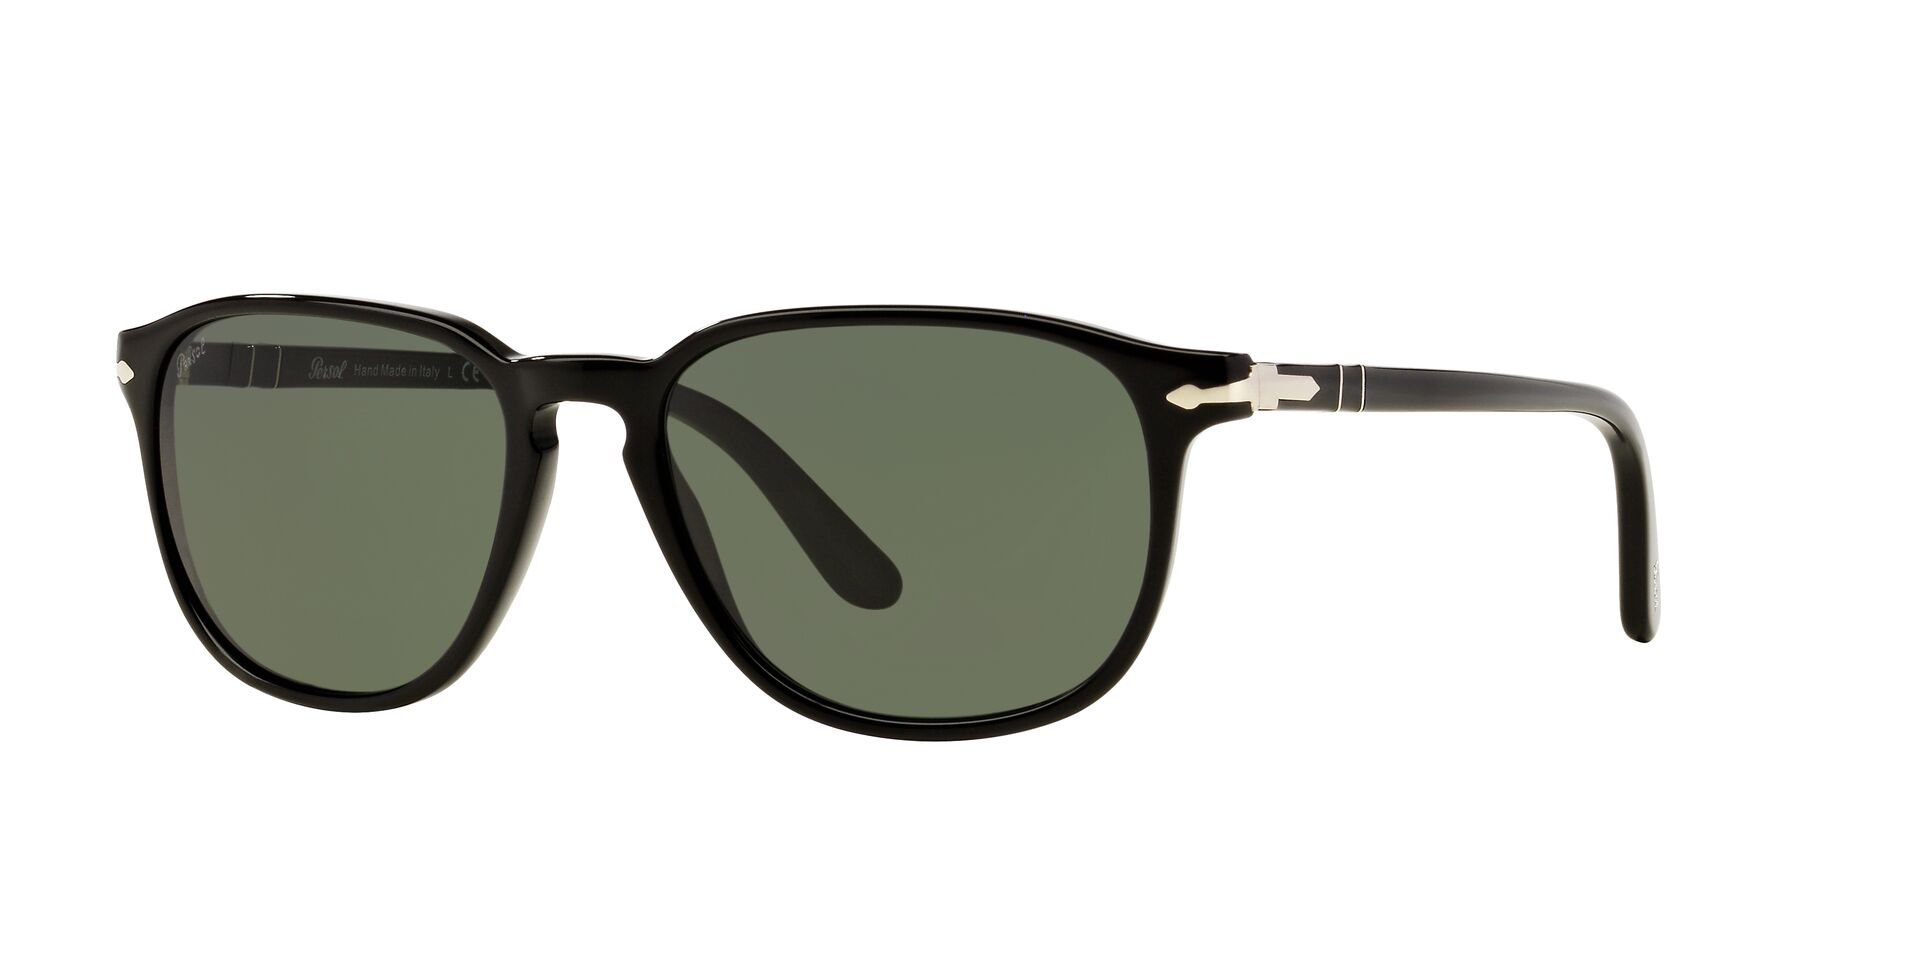 Das Bild zeigt die Sonnenbrille PO3019S 95/31 von der Marke Persol in schwarz.